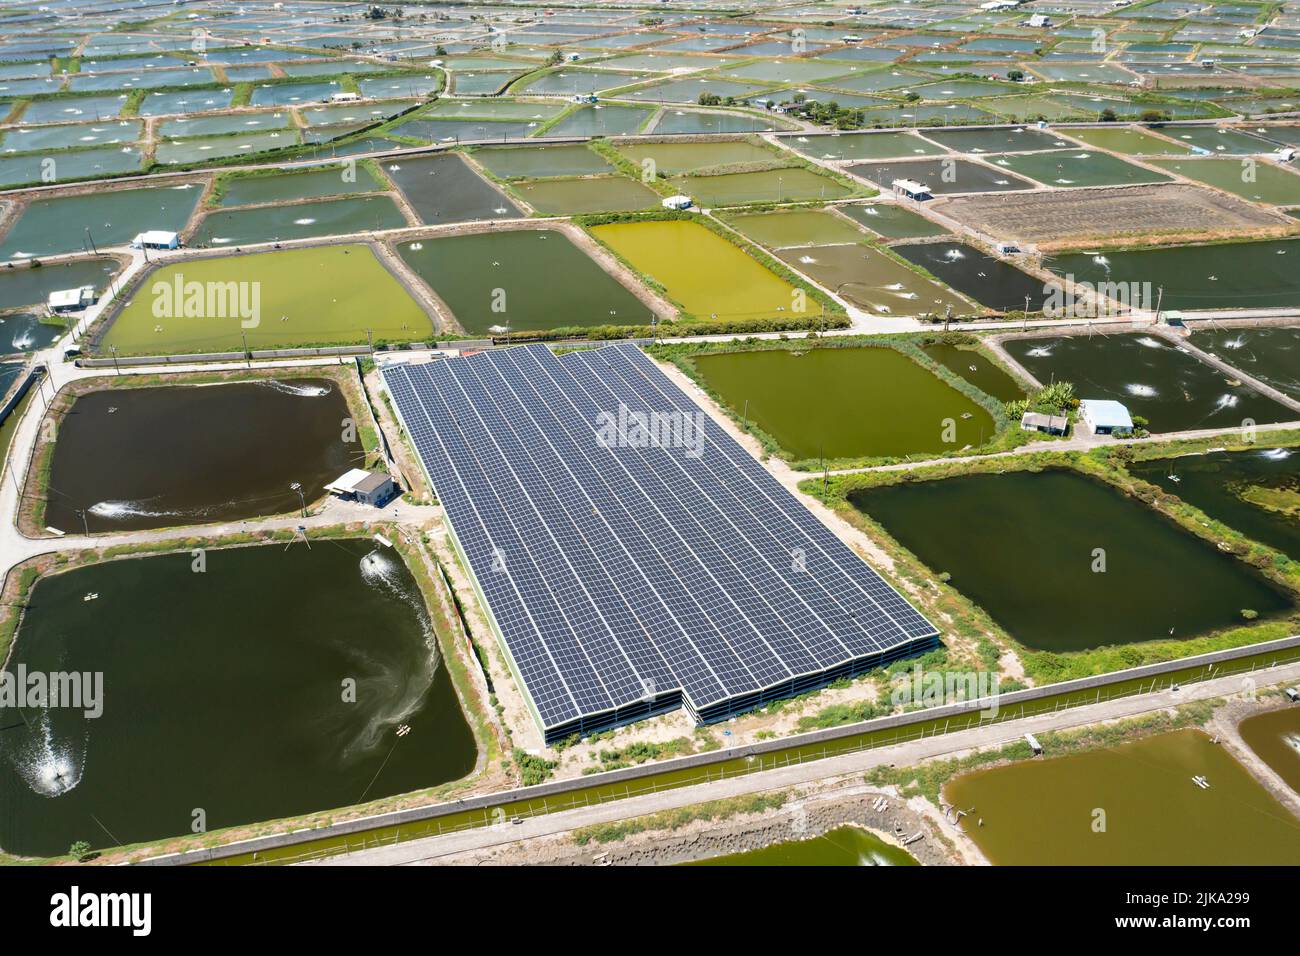 Vue aérienne de la ferme de panneaux solaires sur l'étang à poissons pour la production d'électricité Banque D'Images